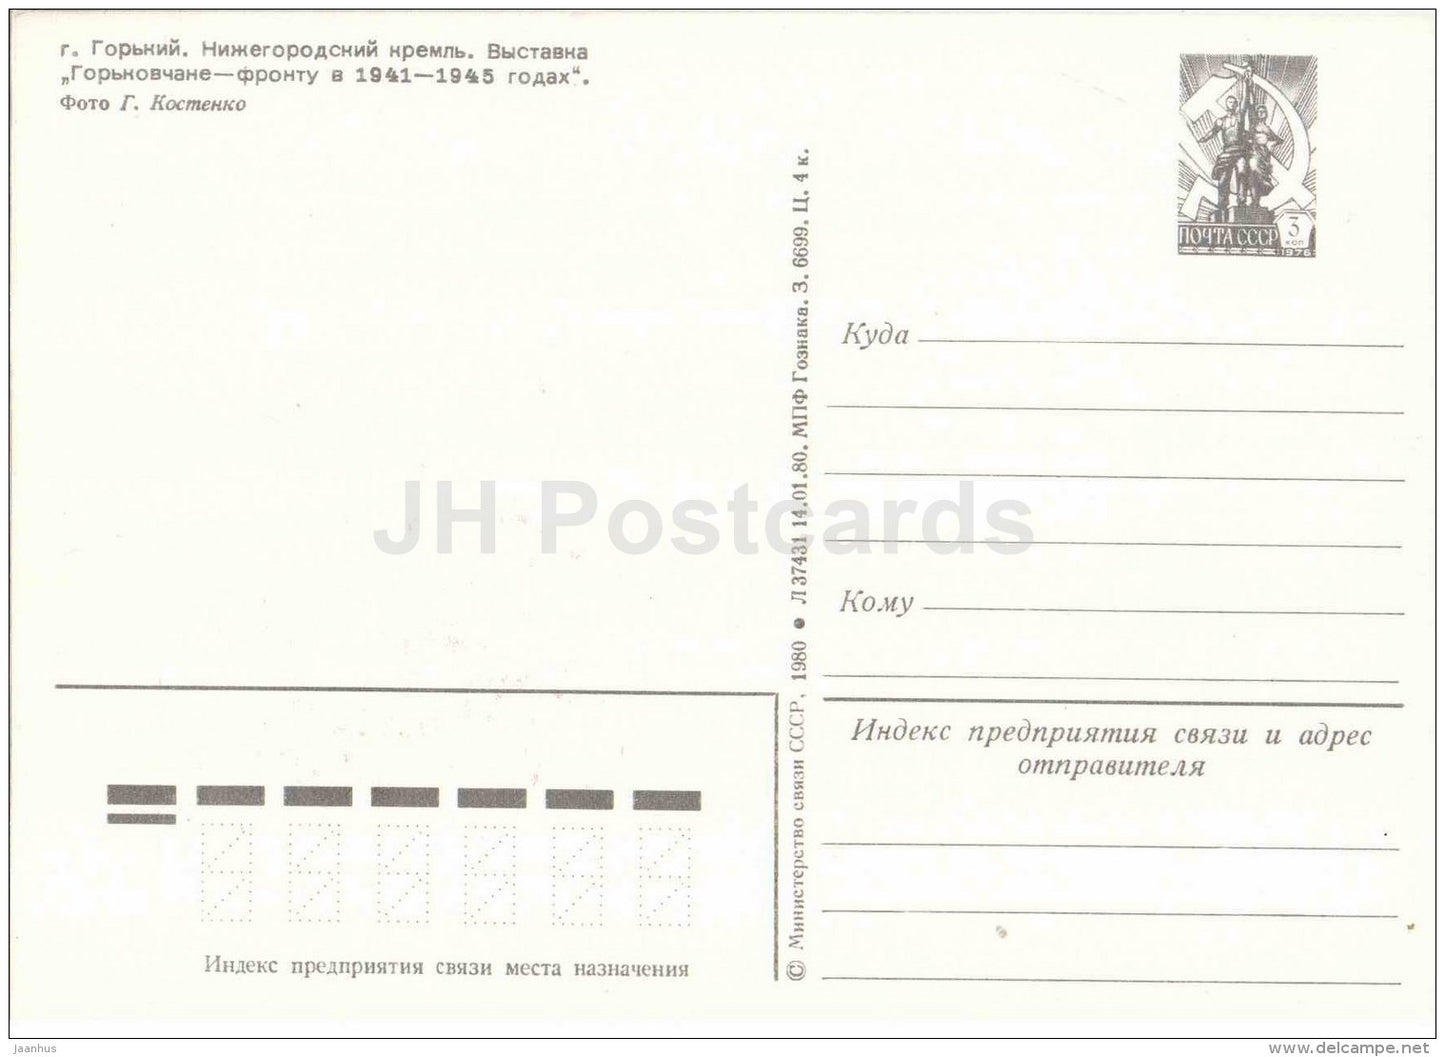 Kremlin - exhibition - warplane - tank - Gorky - Nizhny Novgorod - postal stationery - 1980 - Russia USSR - unused - JH Postcards